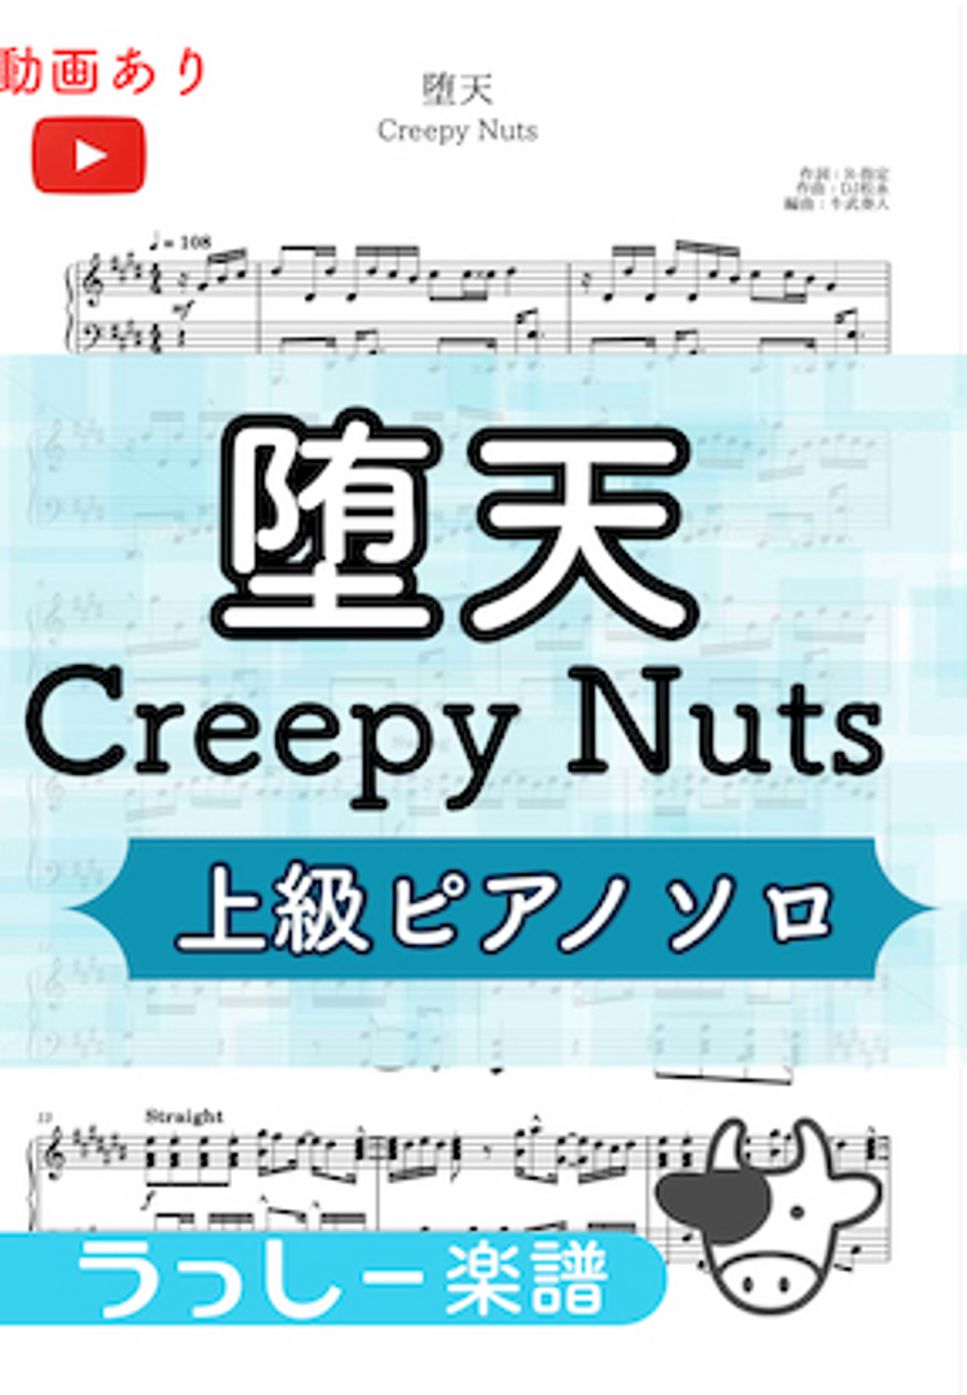 Creepy Nuts - 堕天 by 牛武奏人